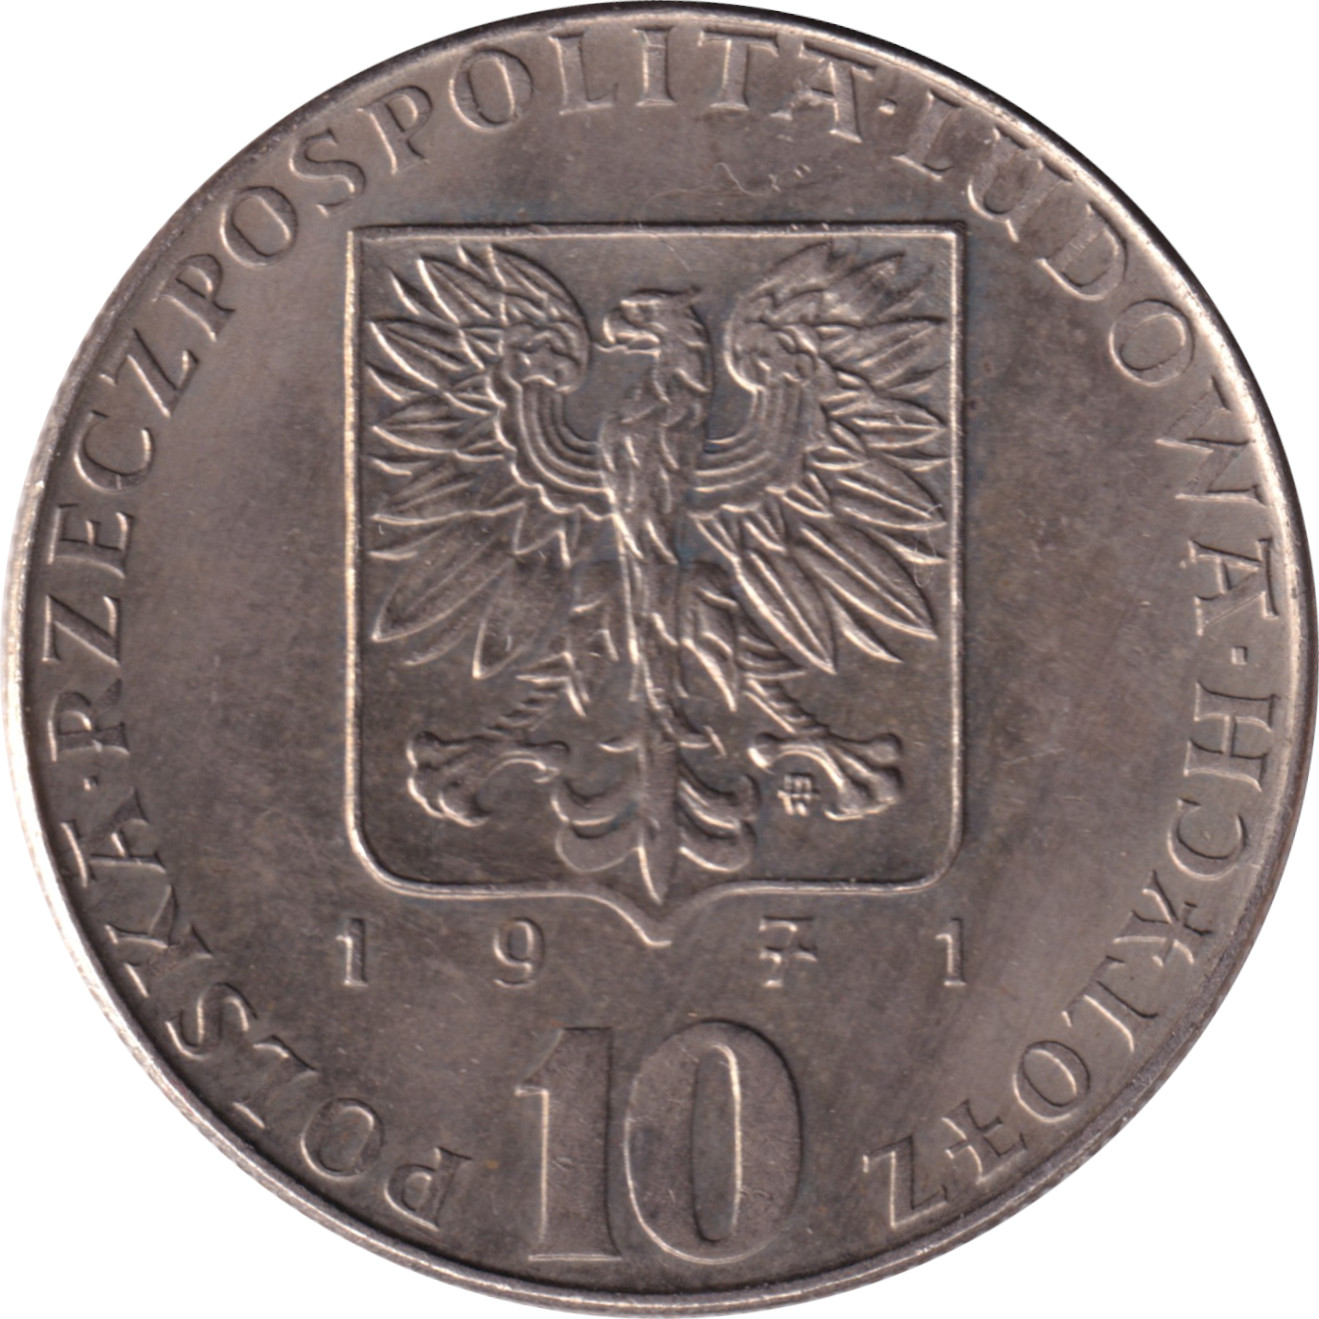 10 zlotych - FAO